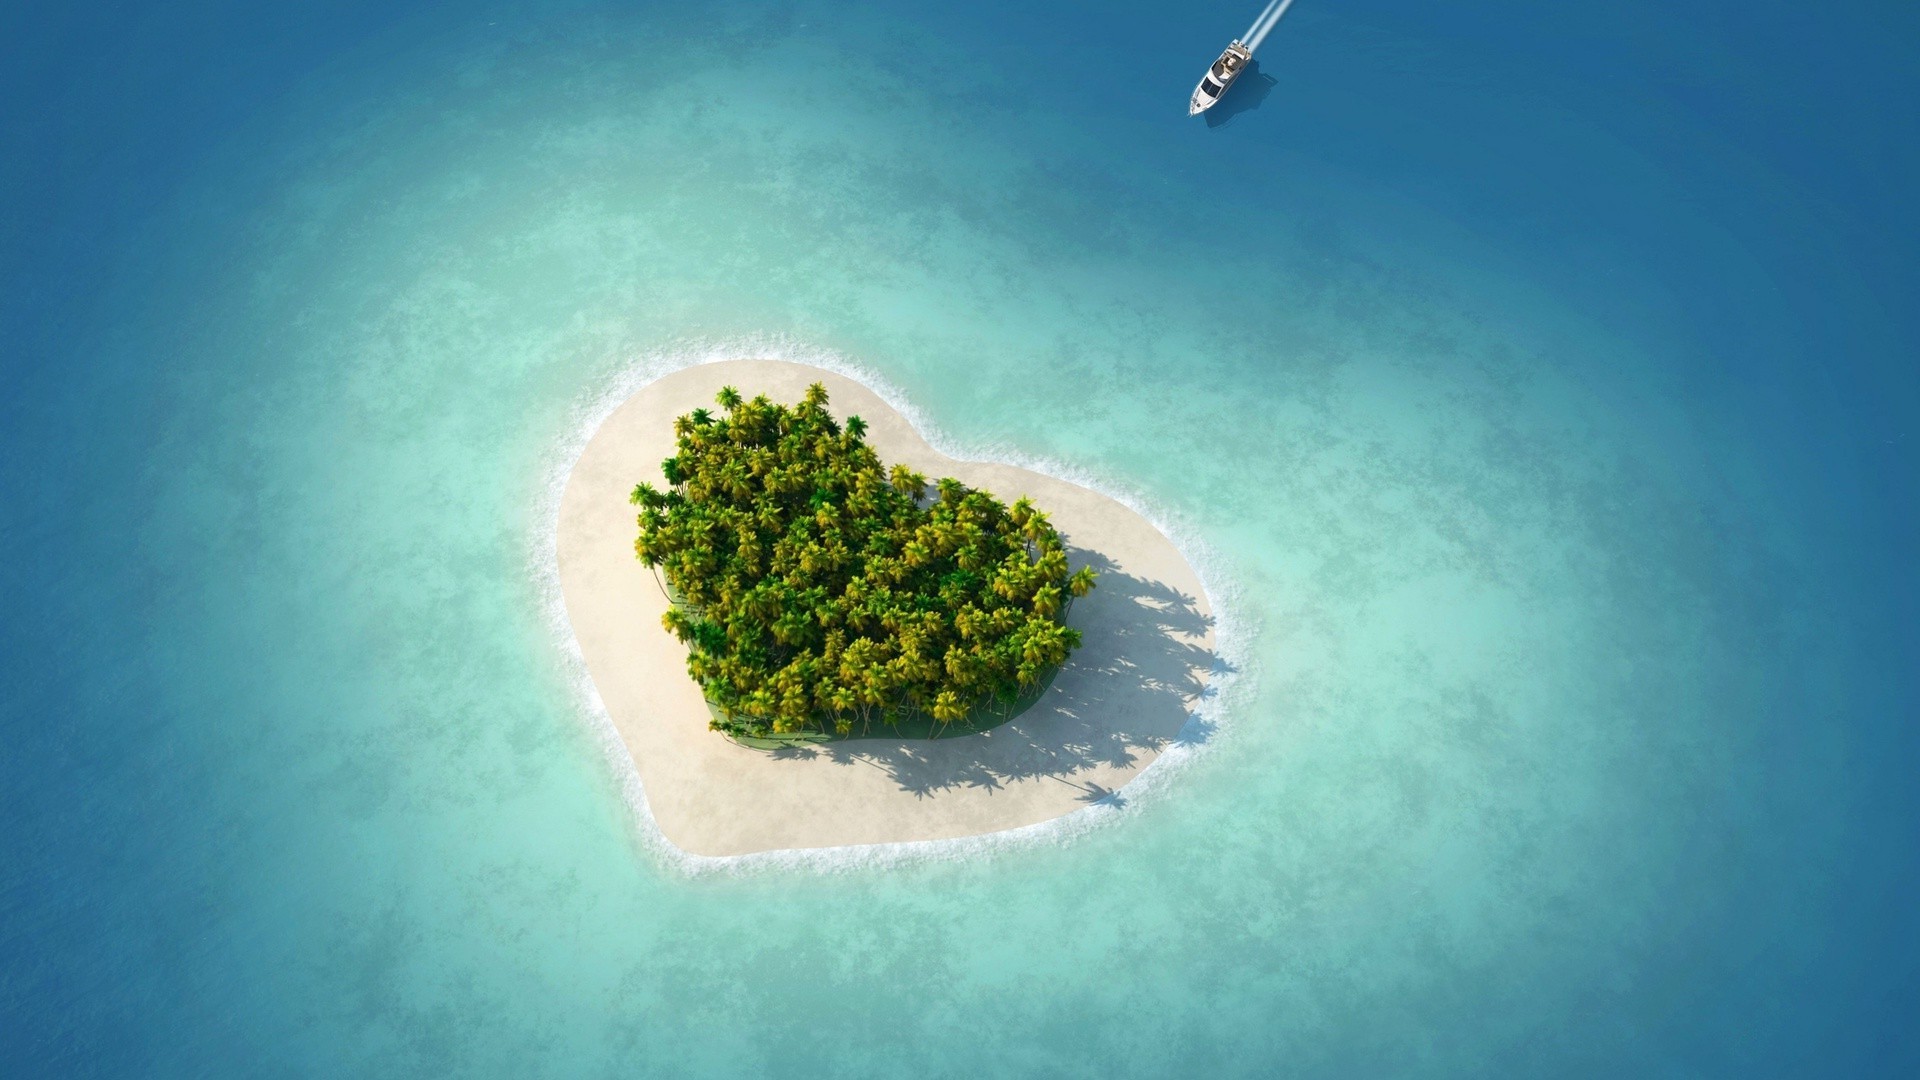 Остров в форме сердца